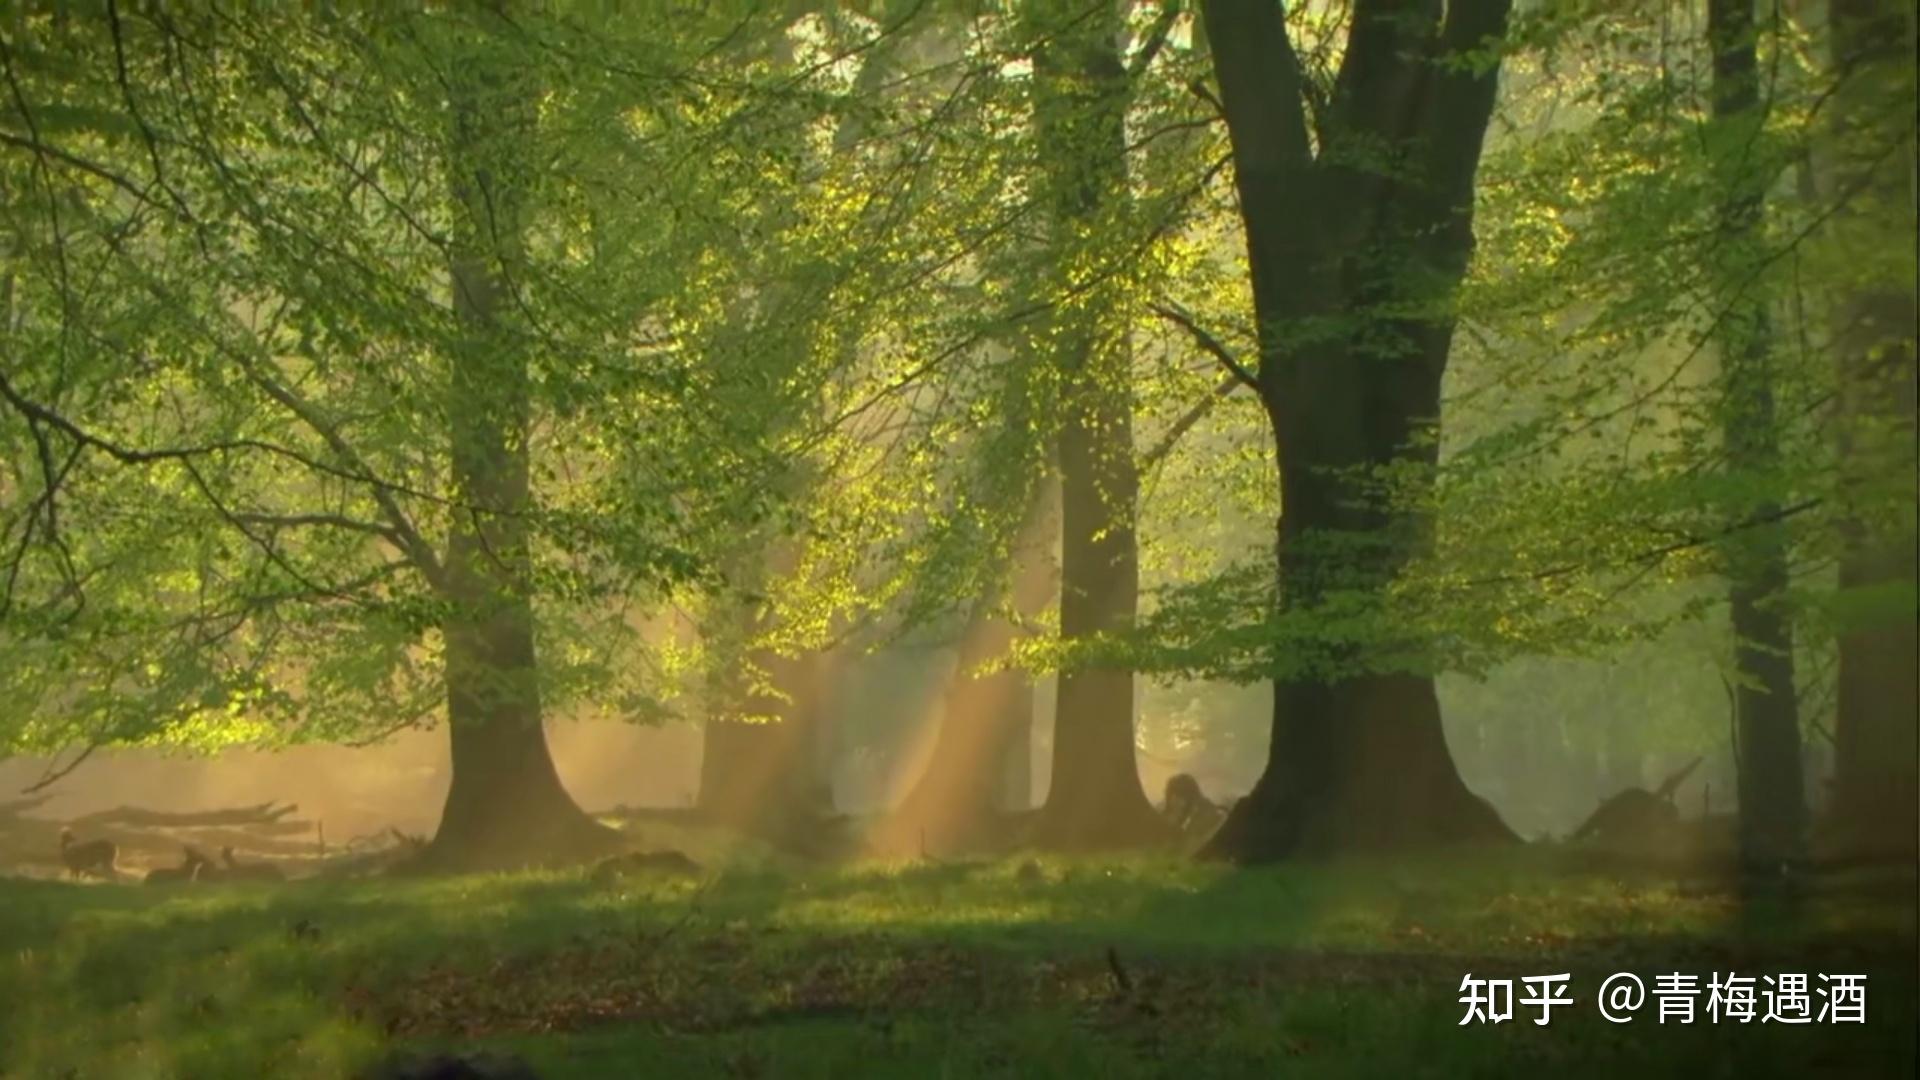 一定要看的纪录片:神秘的森林 | 美到哭的奇精灵世界